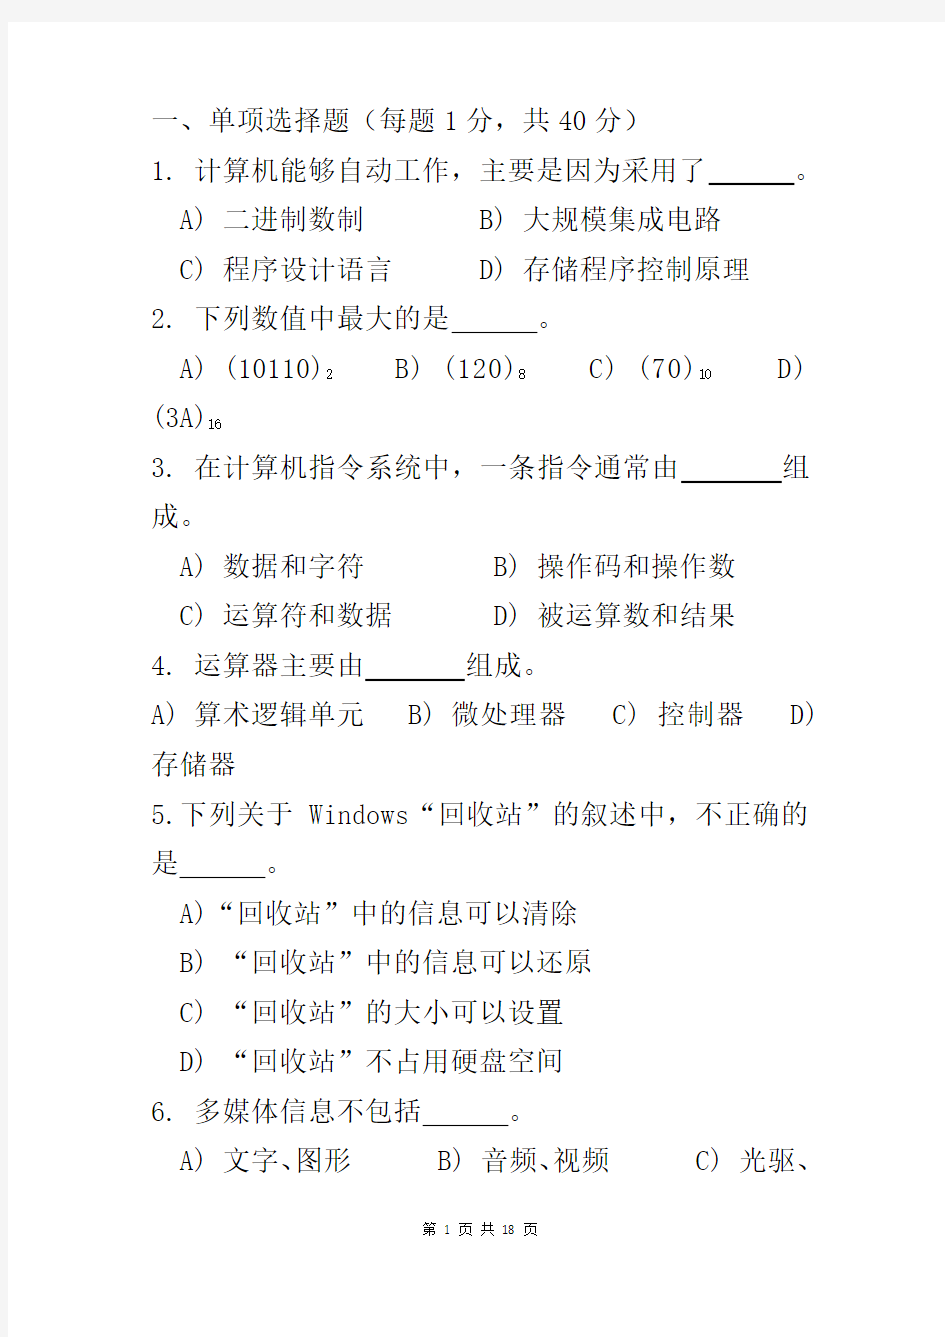 安徽省计算机二级VFP考试理论模拟试题2(附答案)!!!!!!!!